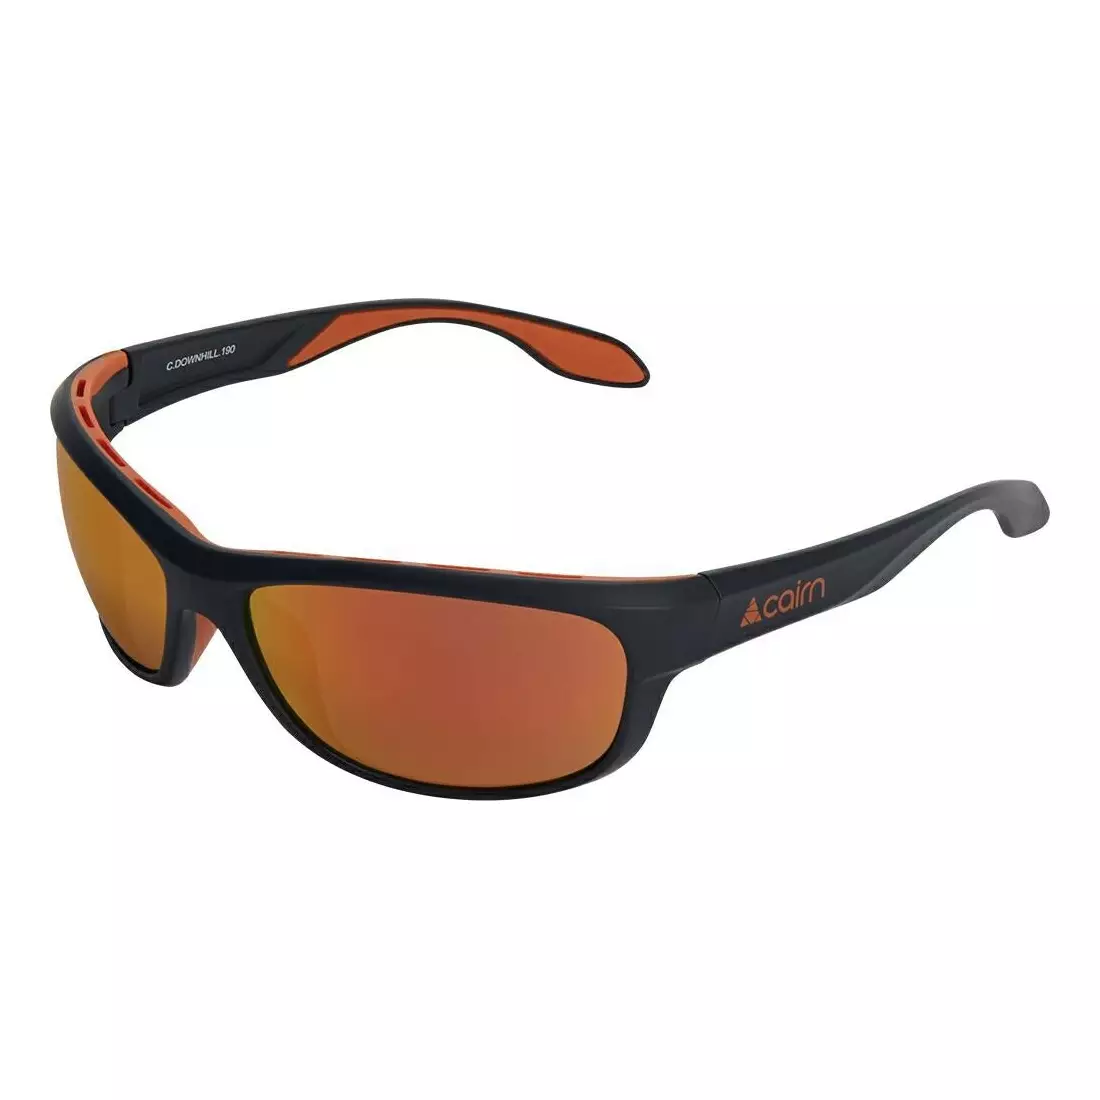 CAIRN Sportbrille DOWNHILL 190, black-orange CDOWNHILL190